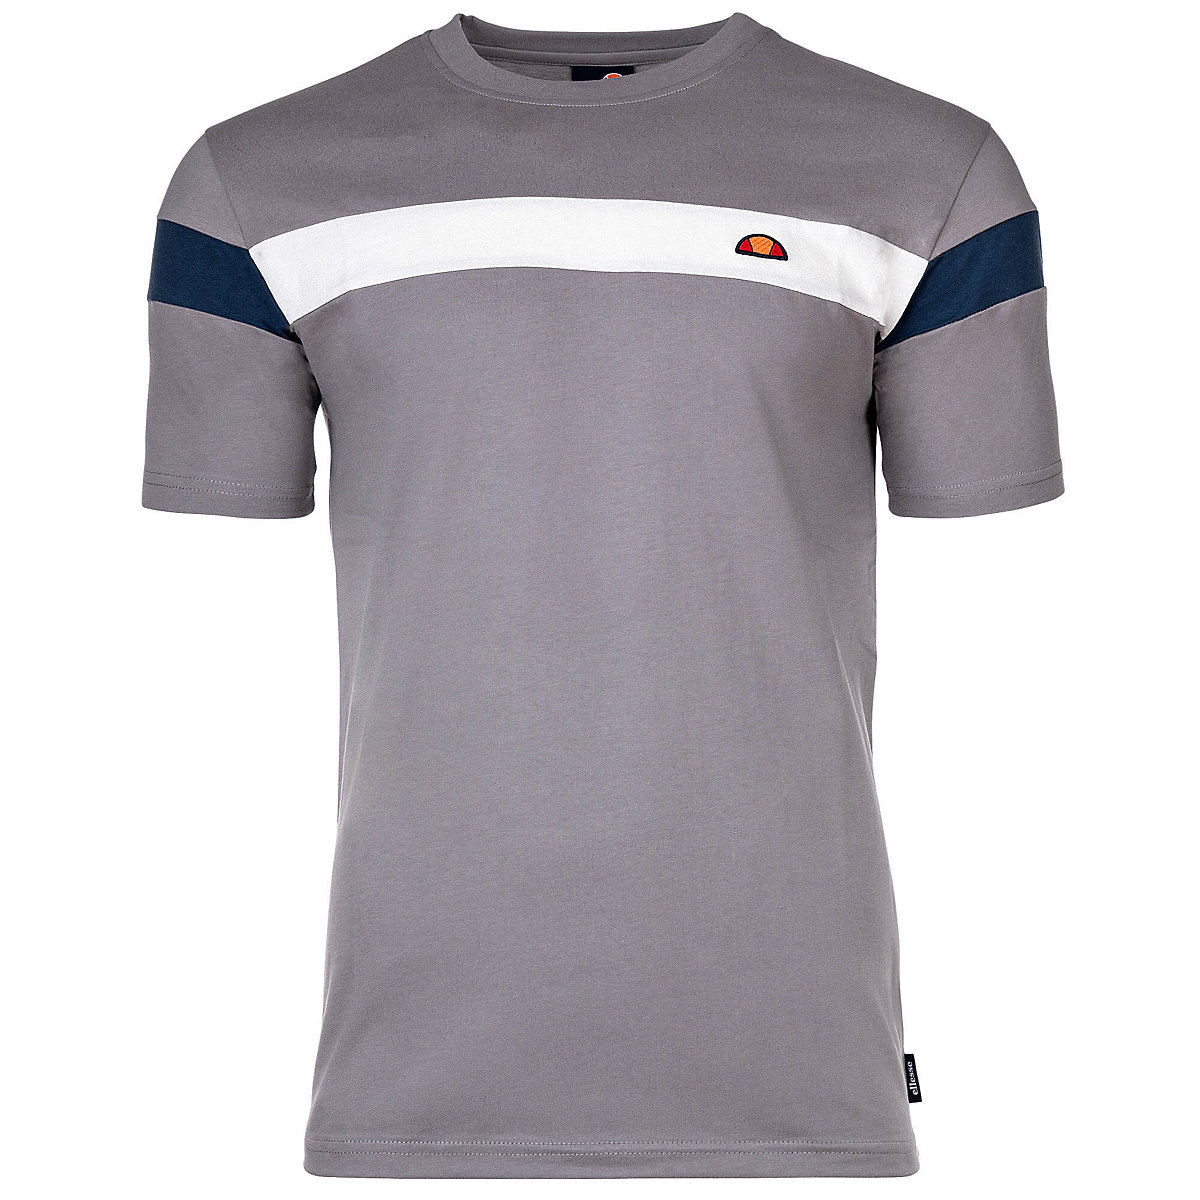 ellesse Herren T-Shirt CASERIO Oberteil Baumwolle Rundhals Logo kurzarm einfarbig T-Shirts grau